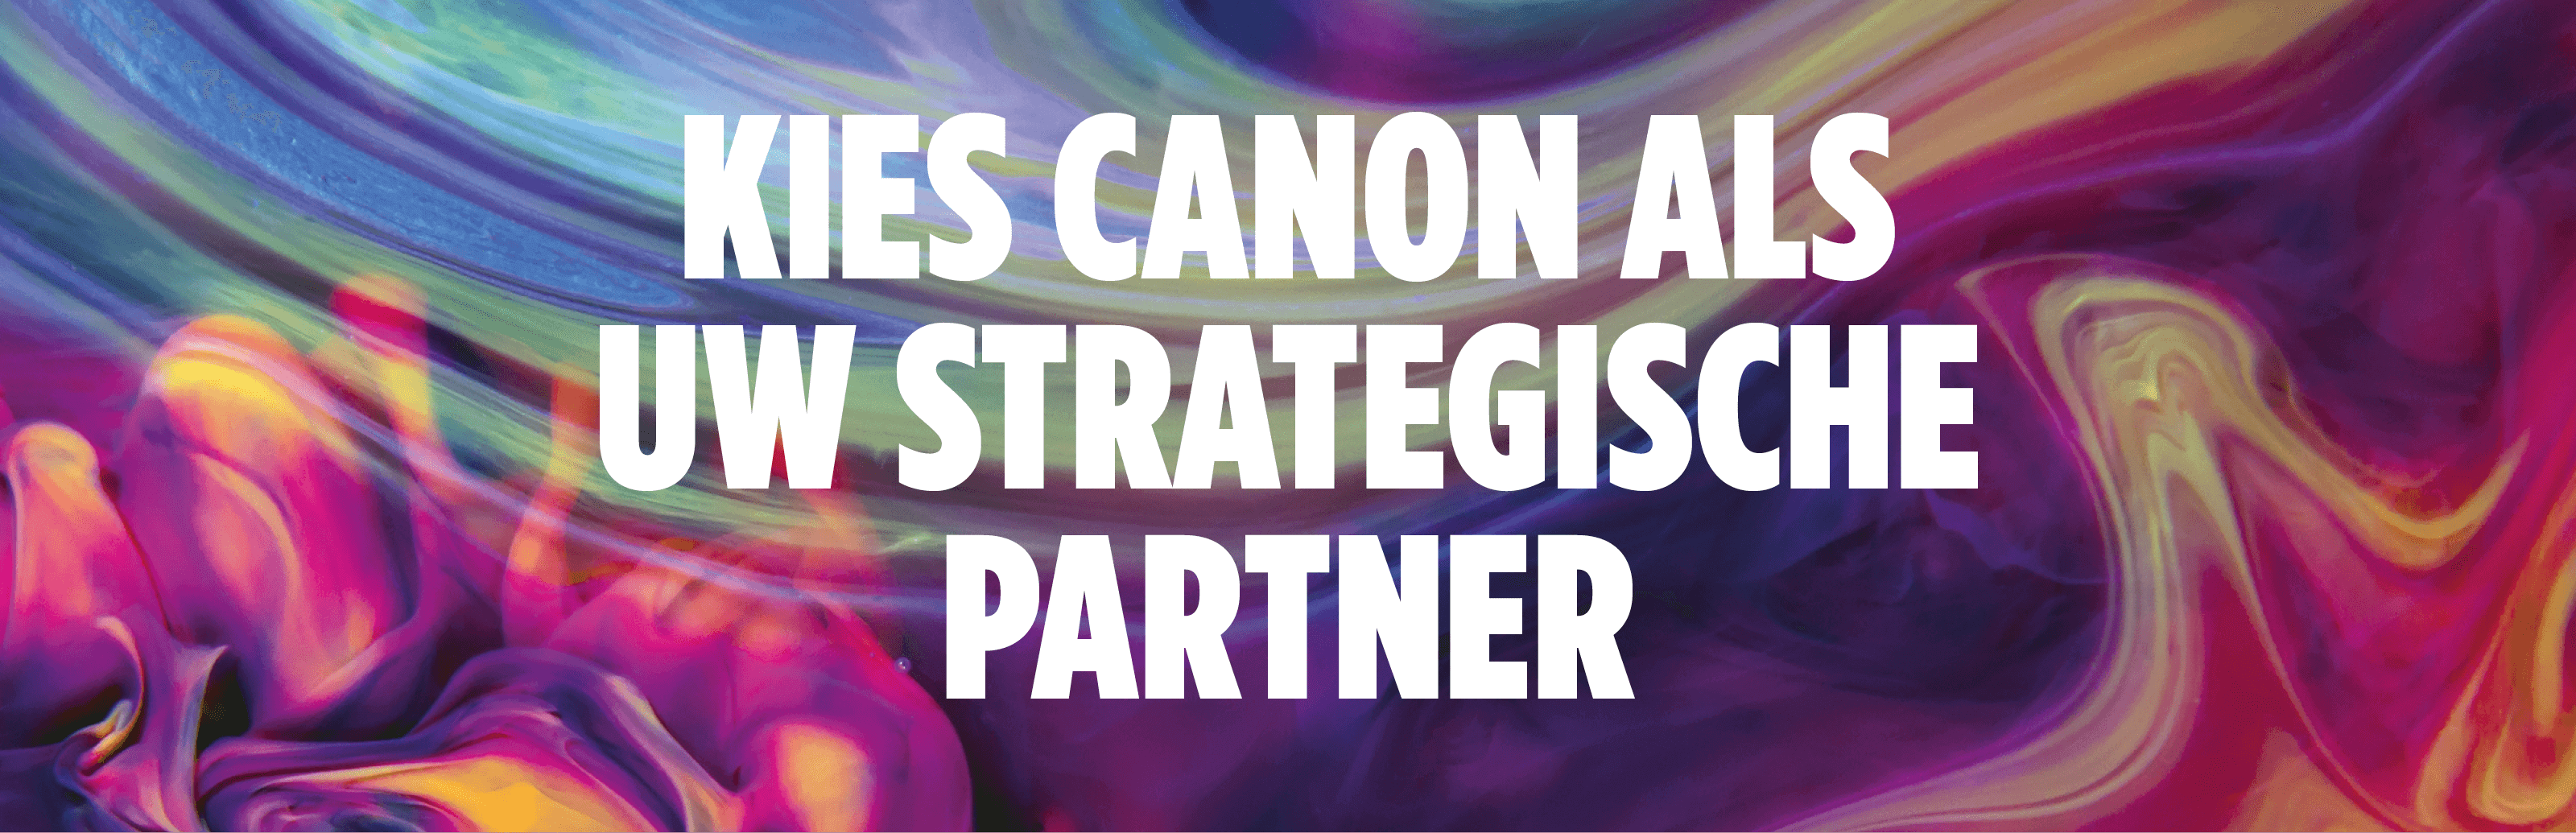 Kies Canon Als Uw Strategische Partner